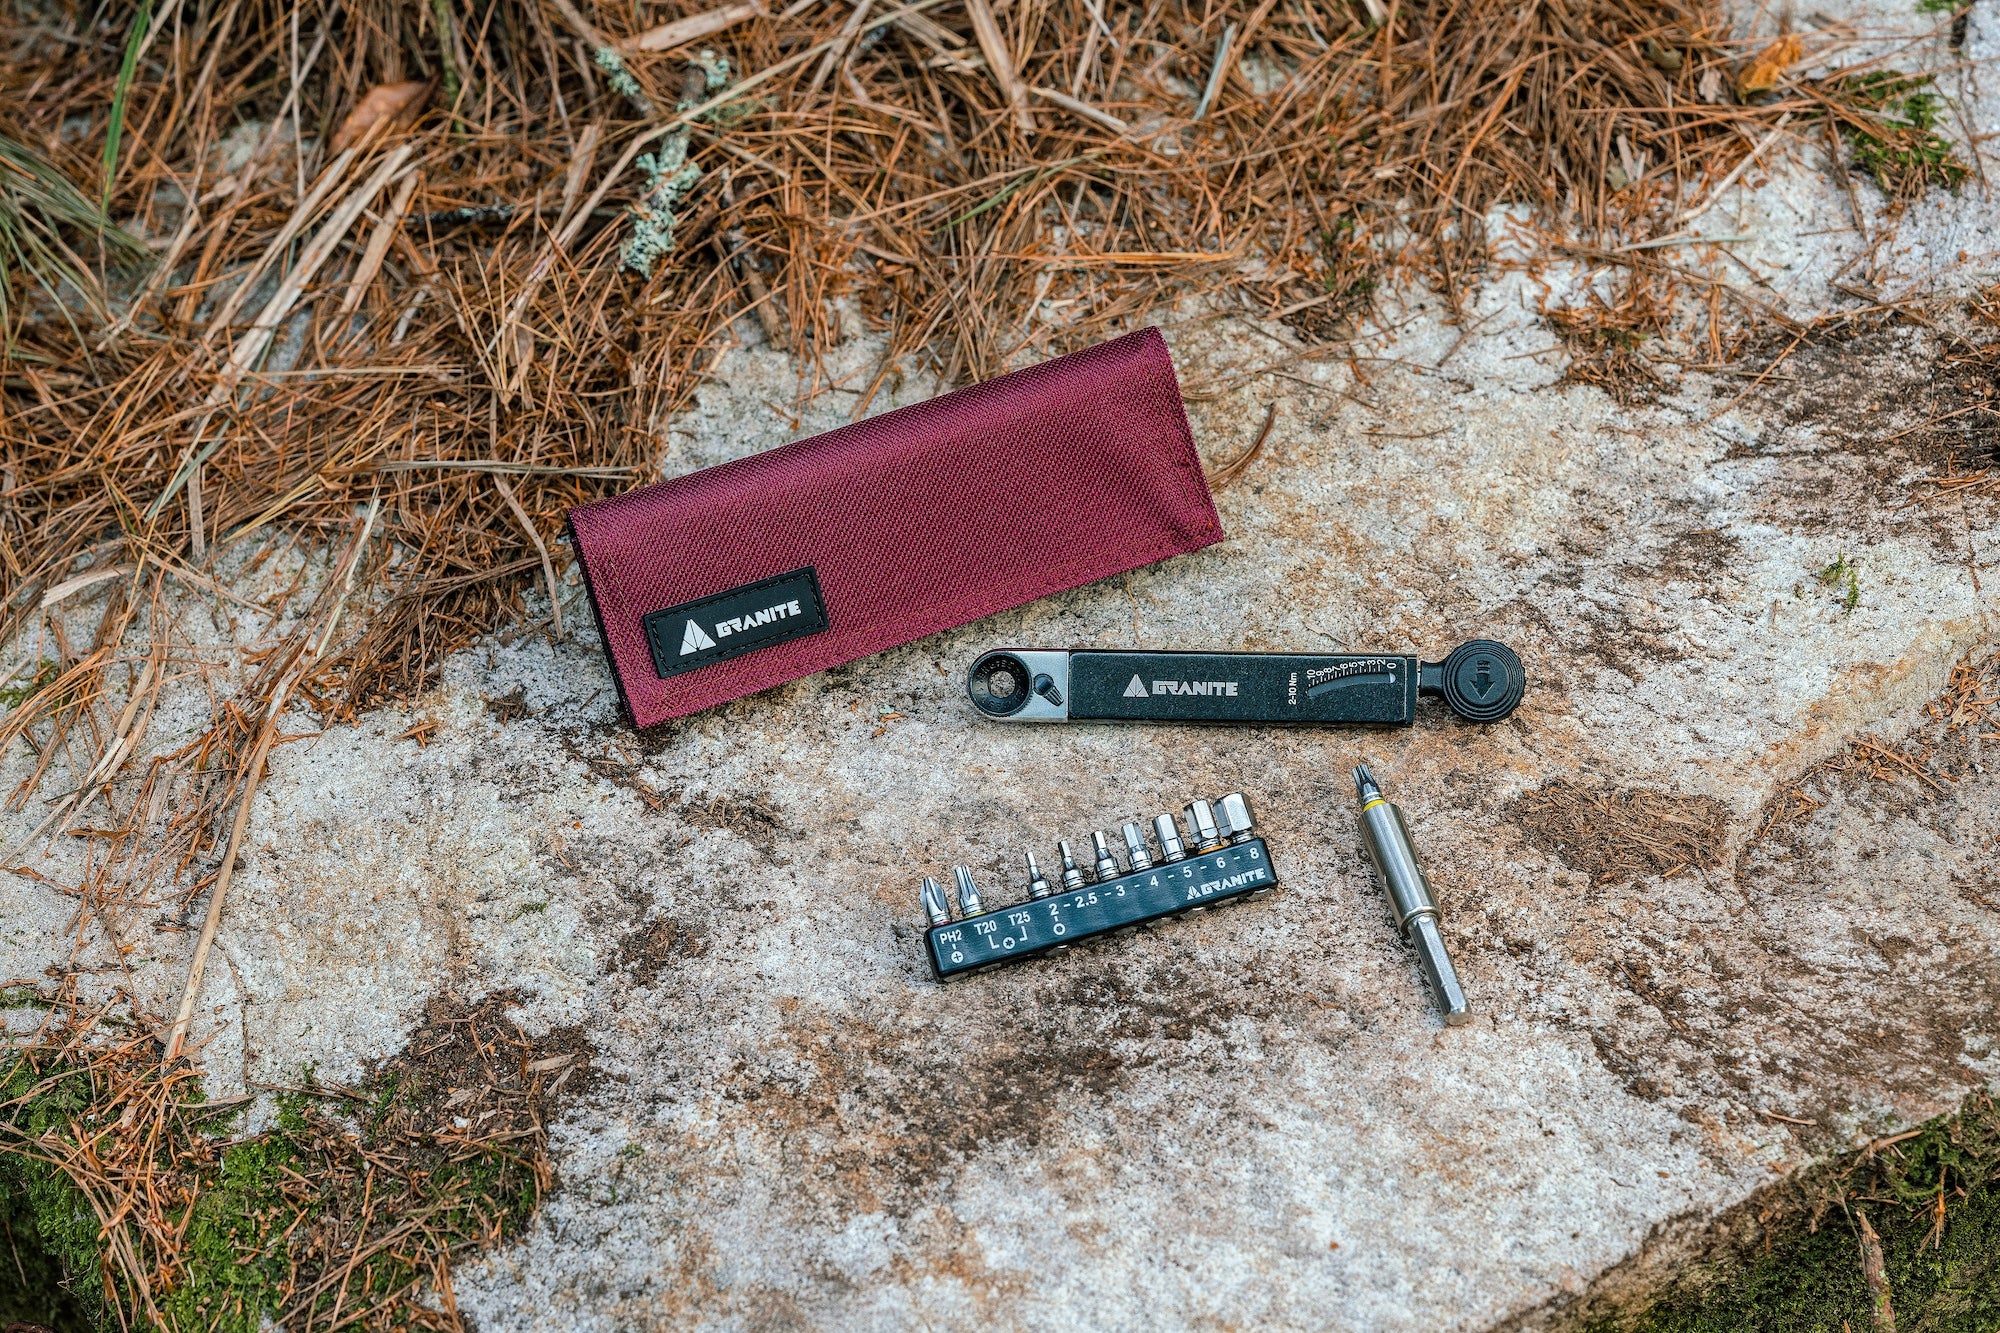 Granite Rocknroll TQ Torque Ratchet Tool Kit